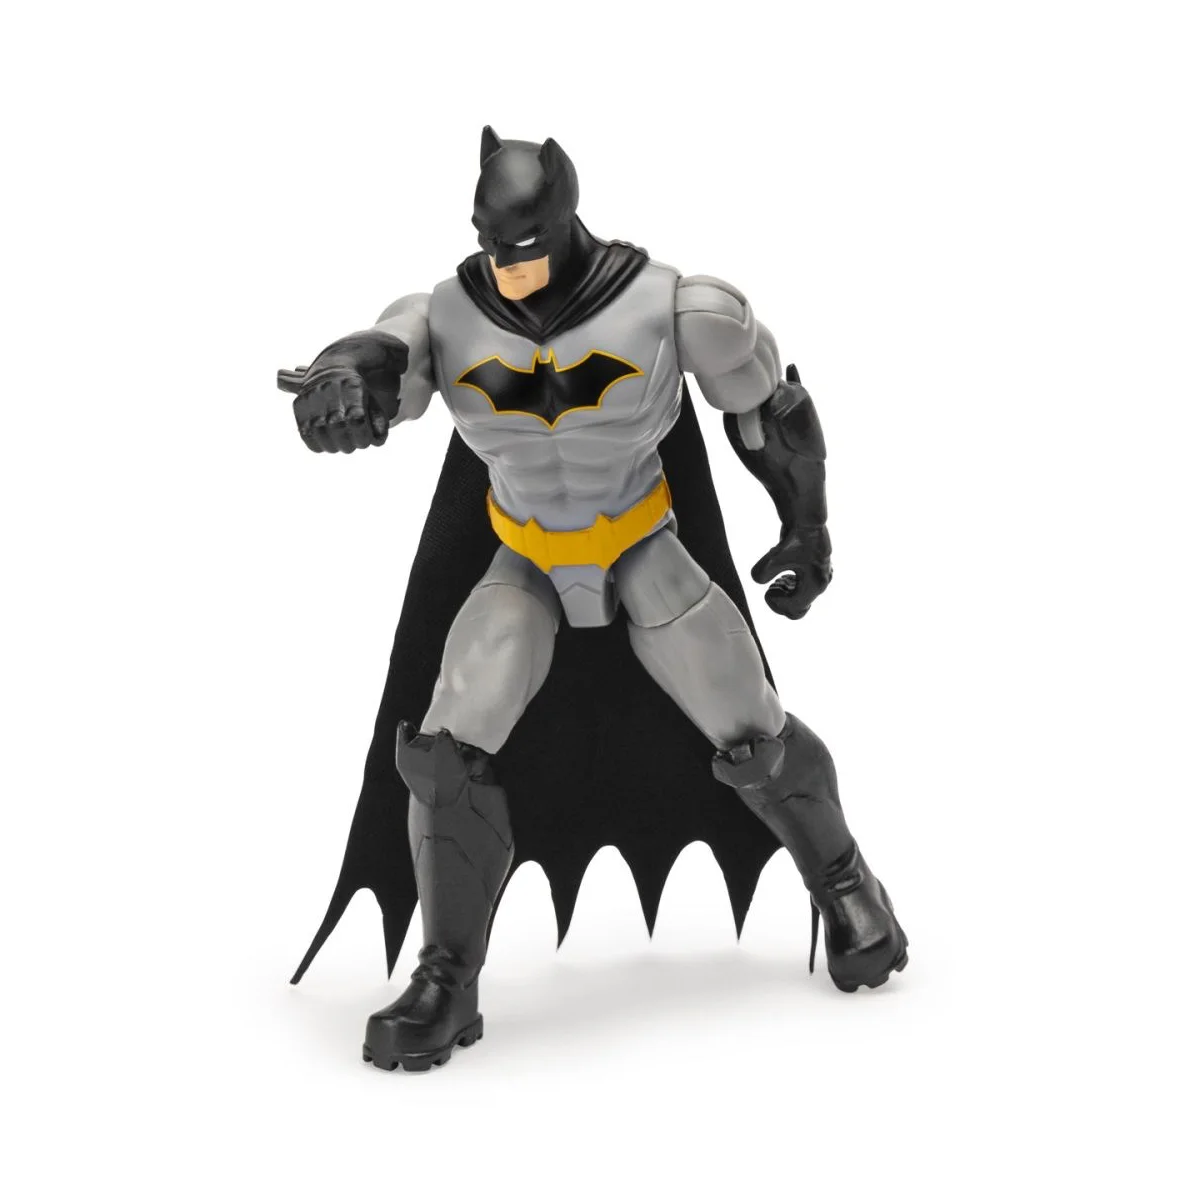 Batman - Figurine de Batman 10 cm assorties - Figurines